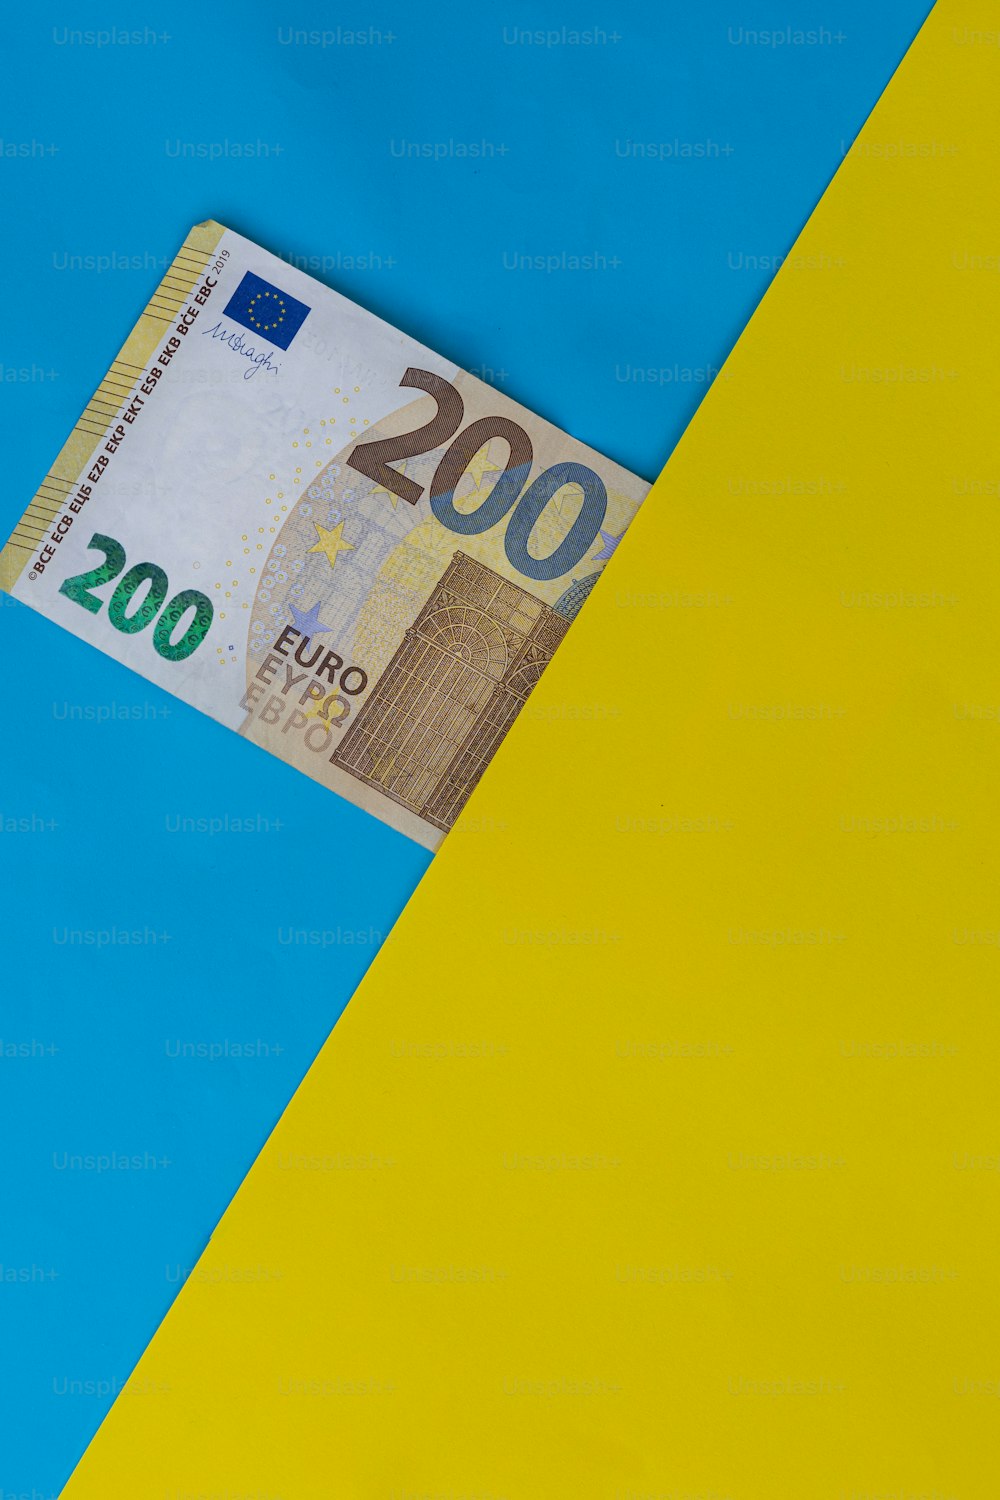 黄色と青の背景から突き出た100ユーロ札